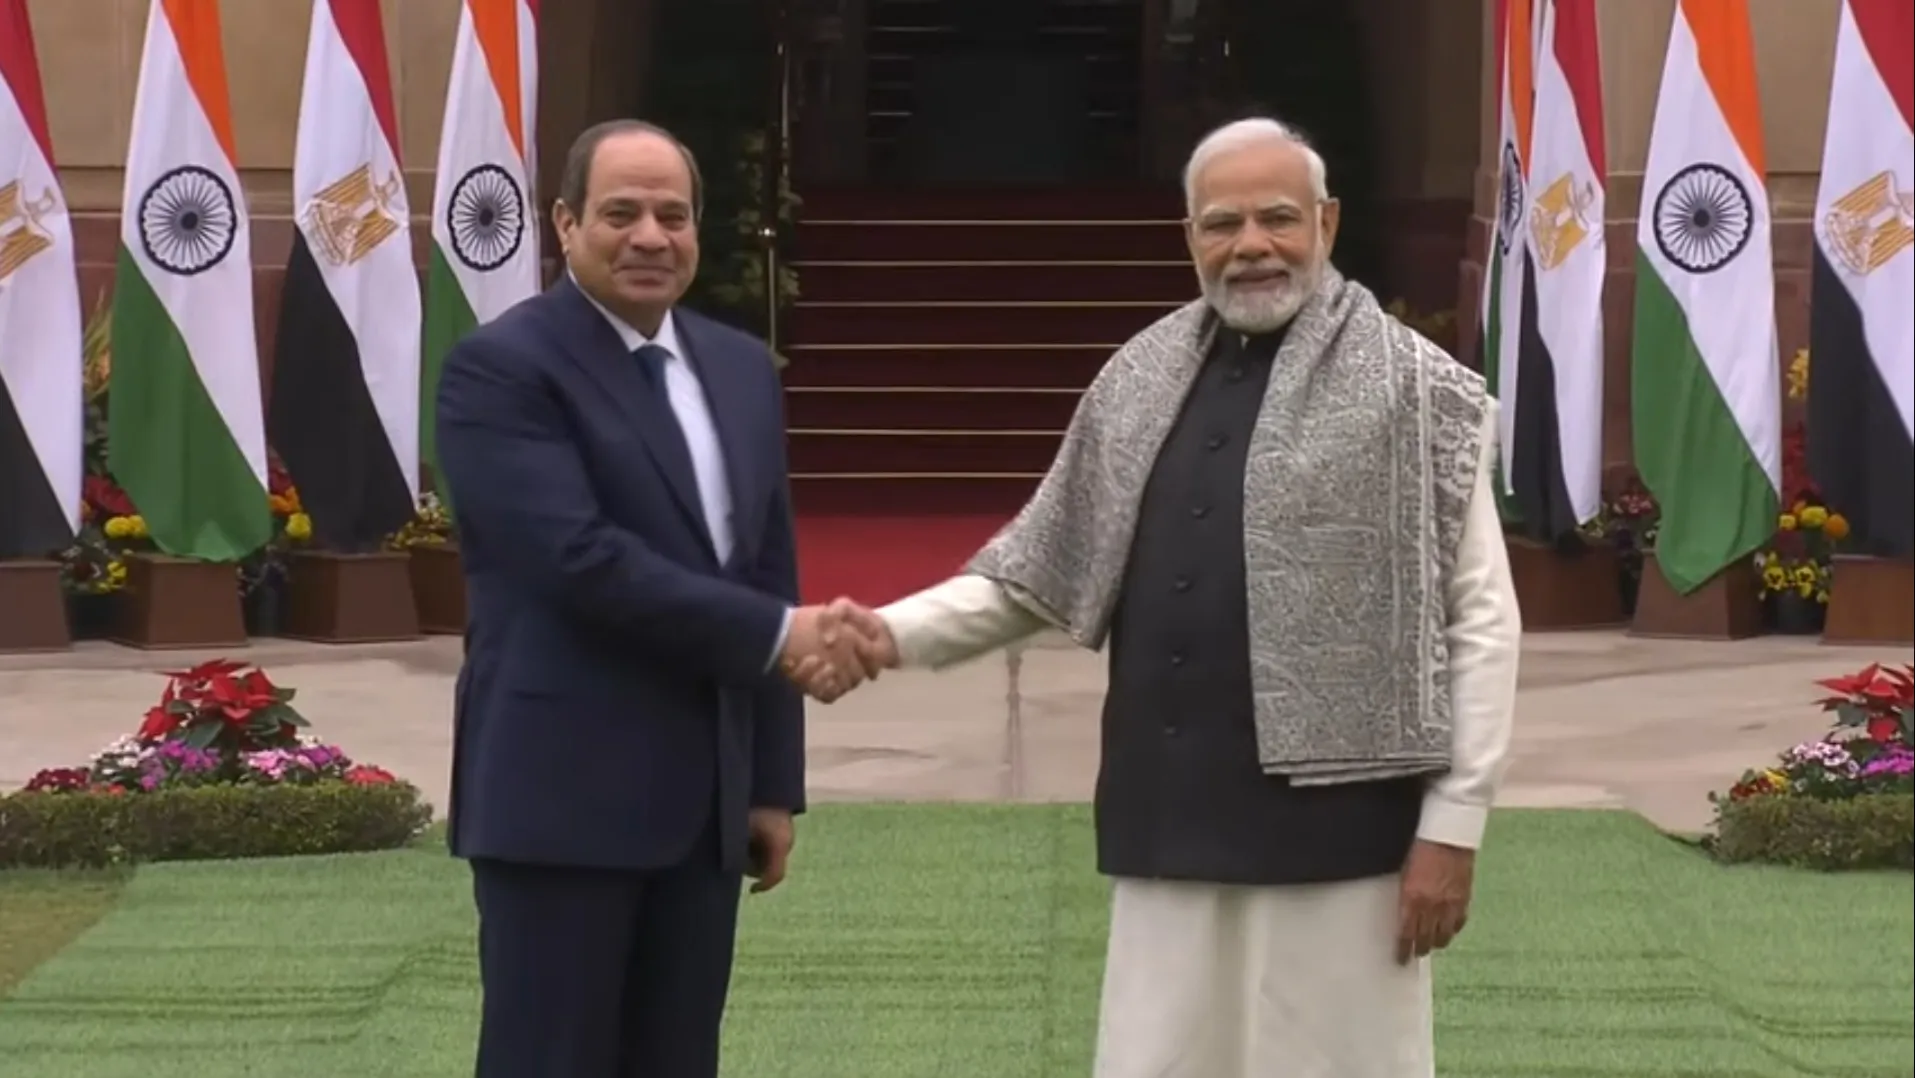 Indian Prime Minister Narendra Modi And President Abdel Fattah el-Sissi in Egypt 2023